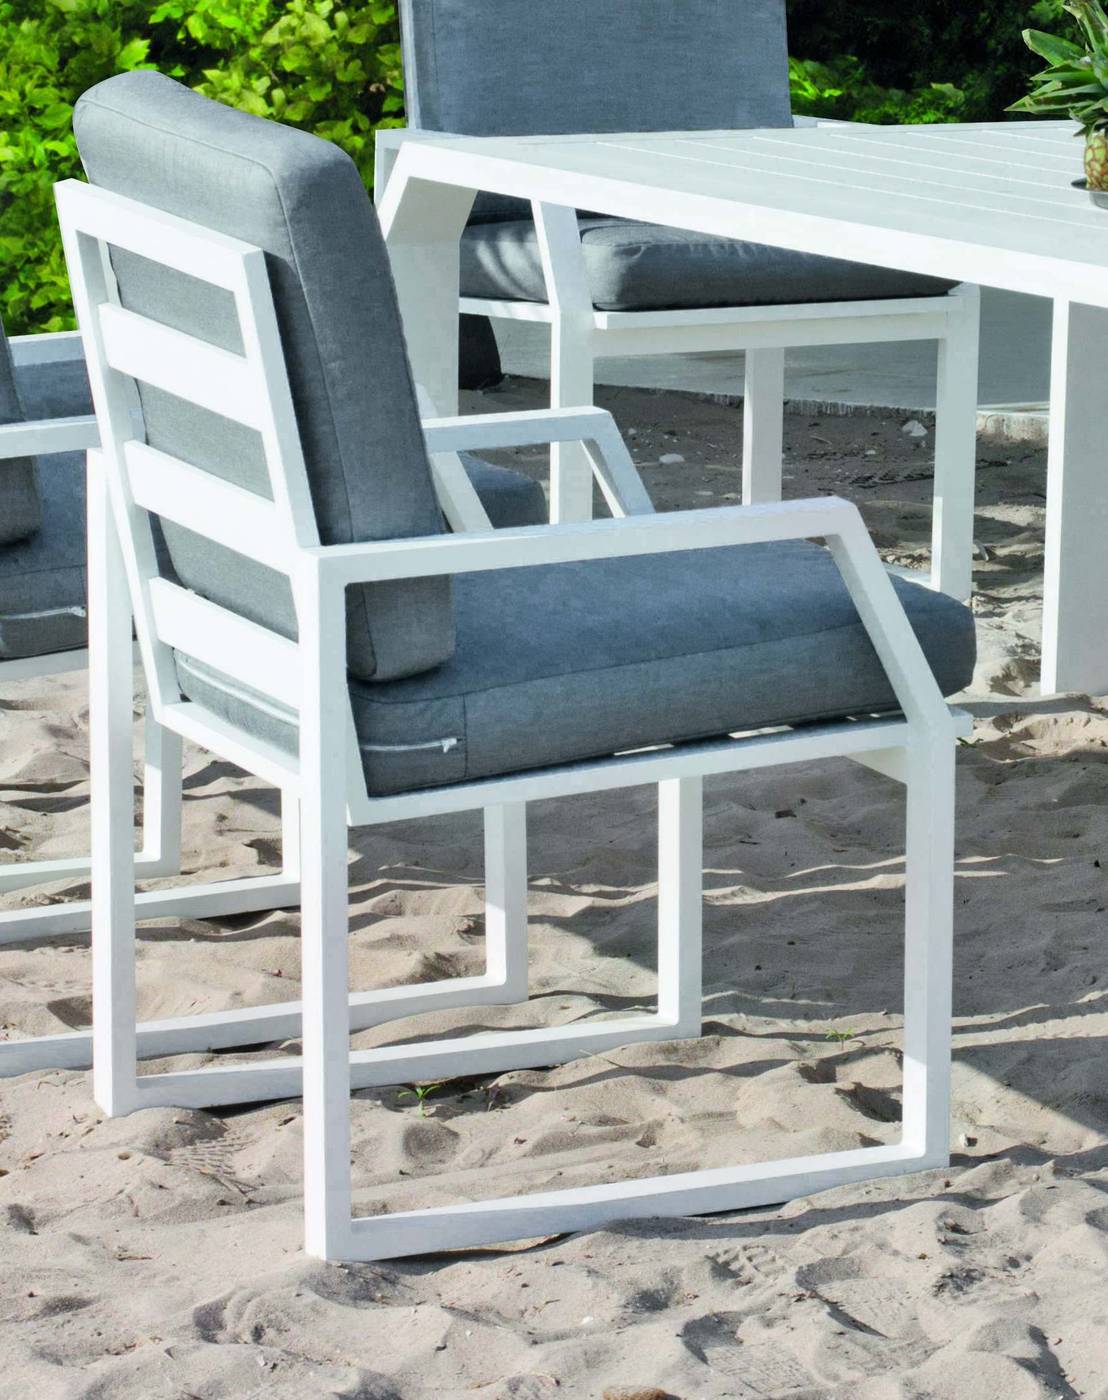 Set Aluminio Zafiro 240-8 - Conjunto de aluminio luxe: Mesa de comedor de 240 cm. + 8 sillones + cojines. Disponible en color blanco, antracita y champagne.